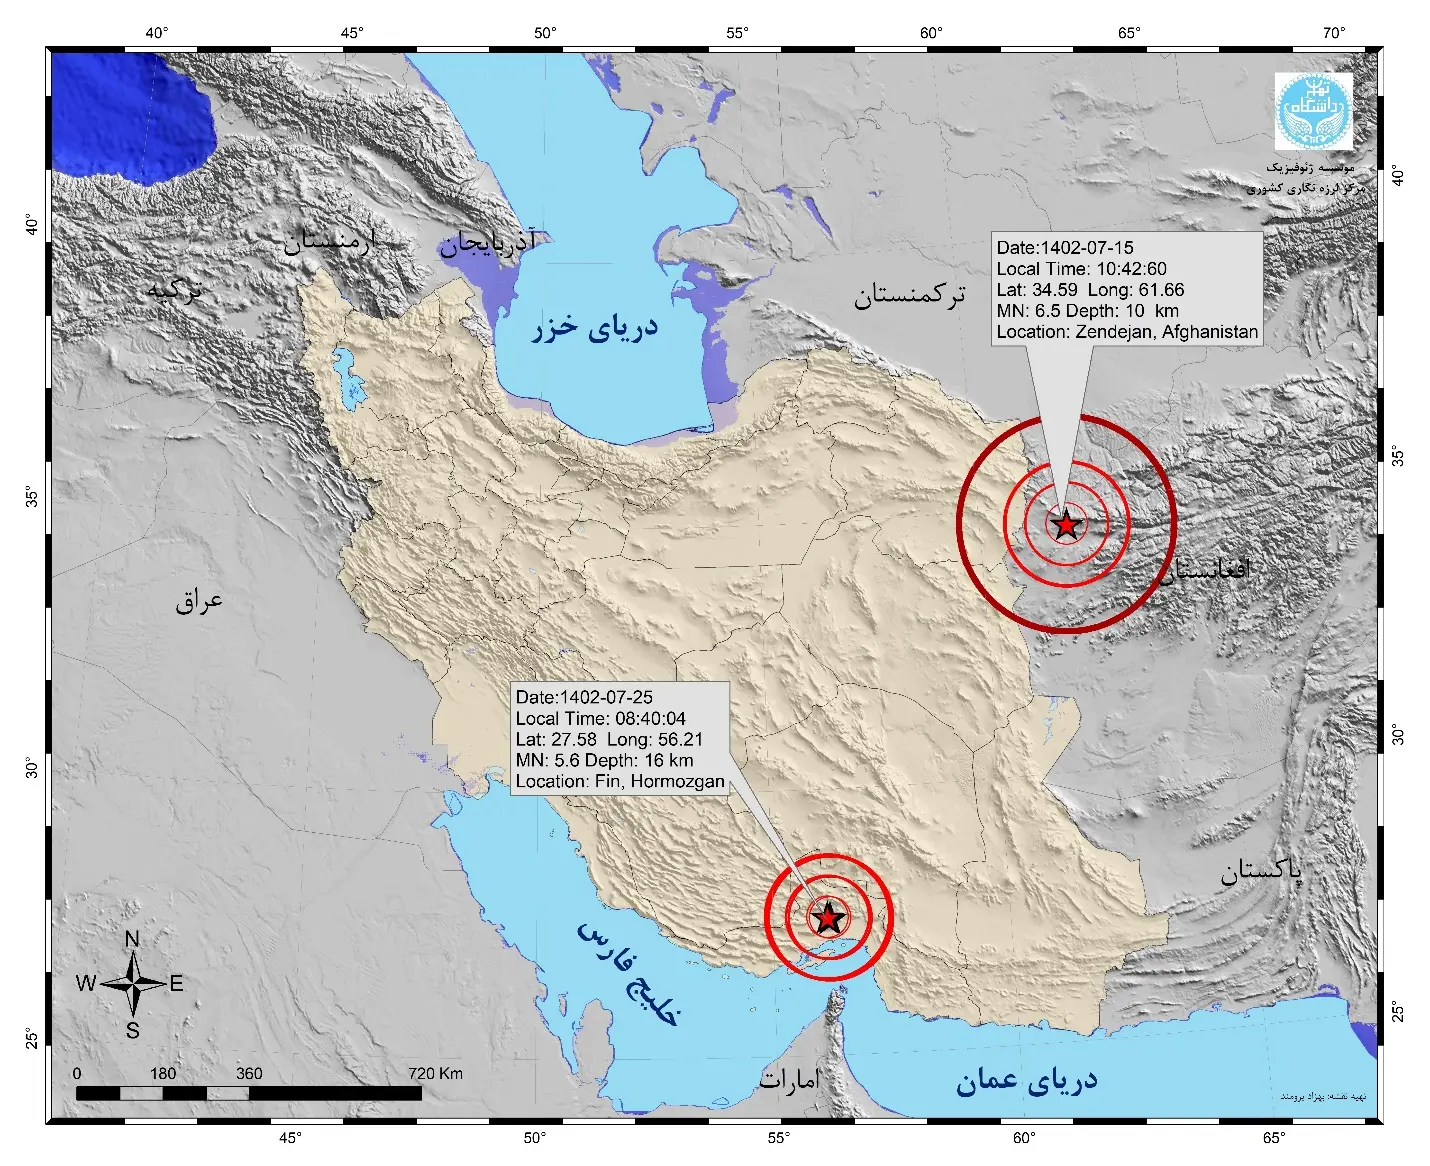 ثبت بیش از ۱۰۷۰ زمین‌لرزه در مهرماه ۱۴۰۲ توسط مرکز لرزه‌نگاری کشوری مؤسسه ژئوفیزیک